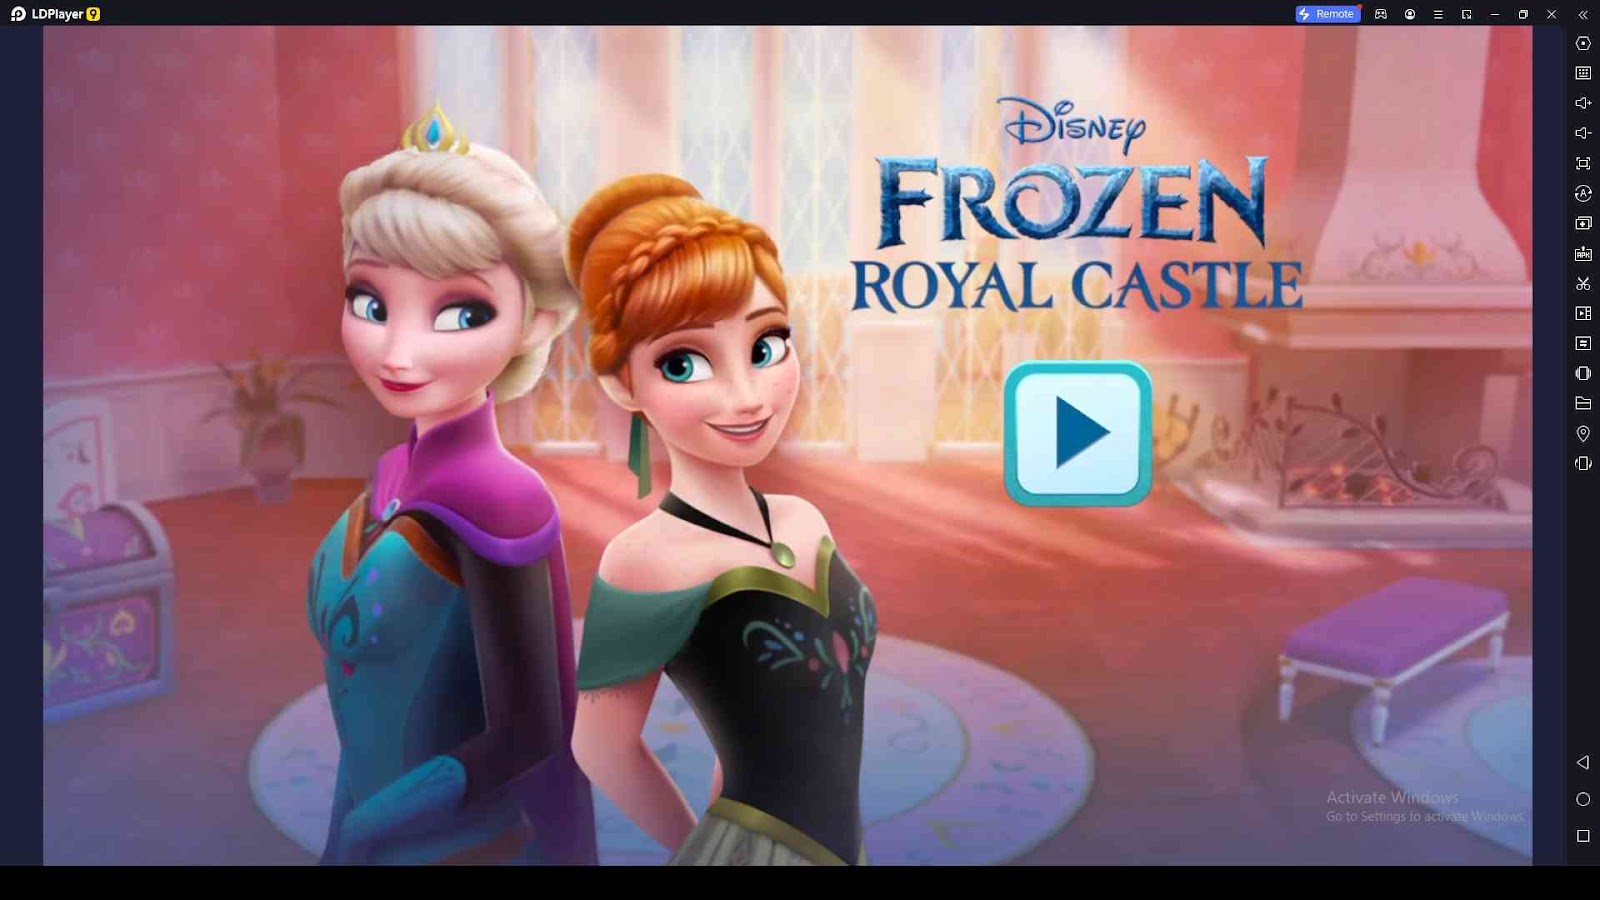 Disney Frozen Royal Castle Codes